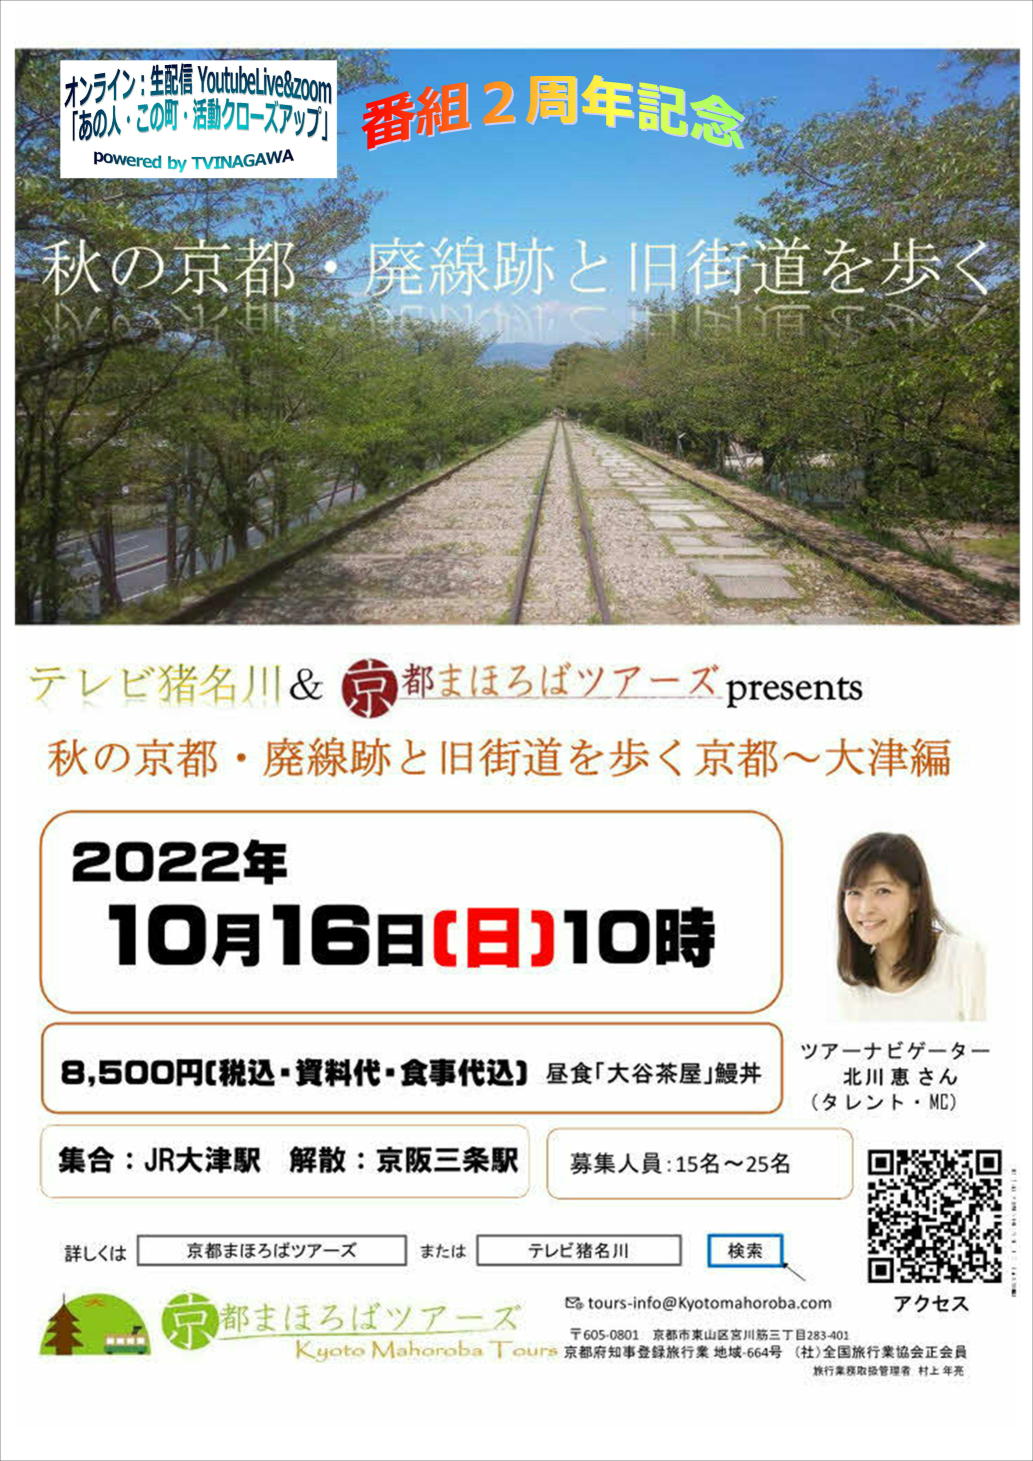 9月 | 2022 | テレビ猪名川コミュニケーションチャンネル